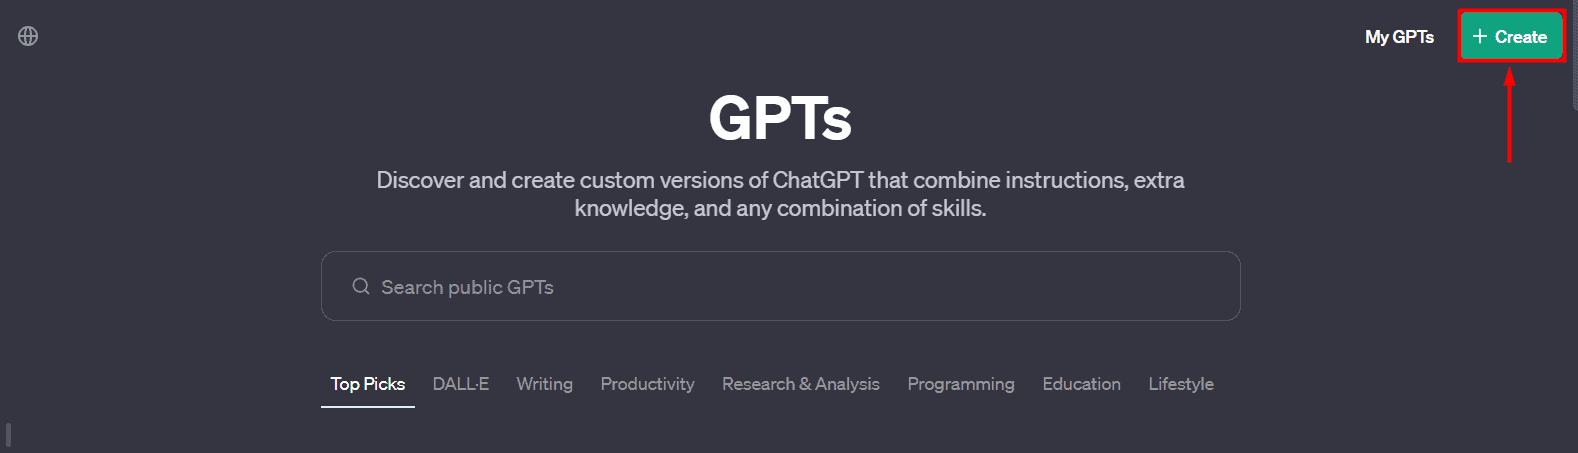 Create Custom GPT